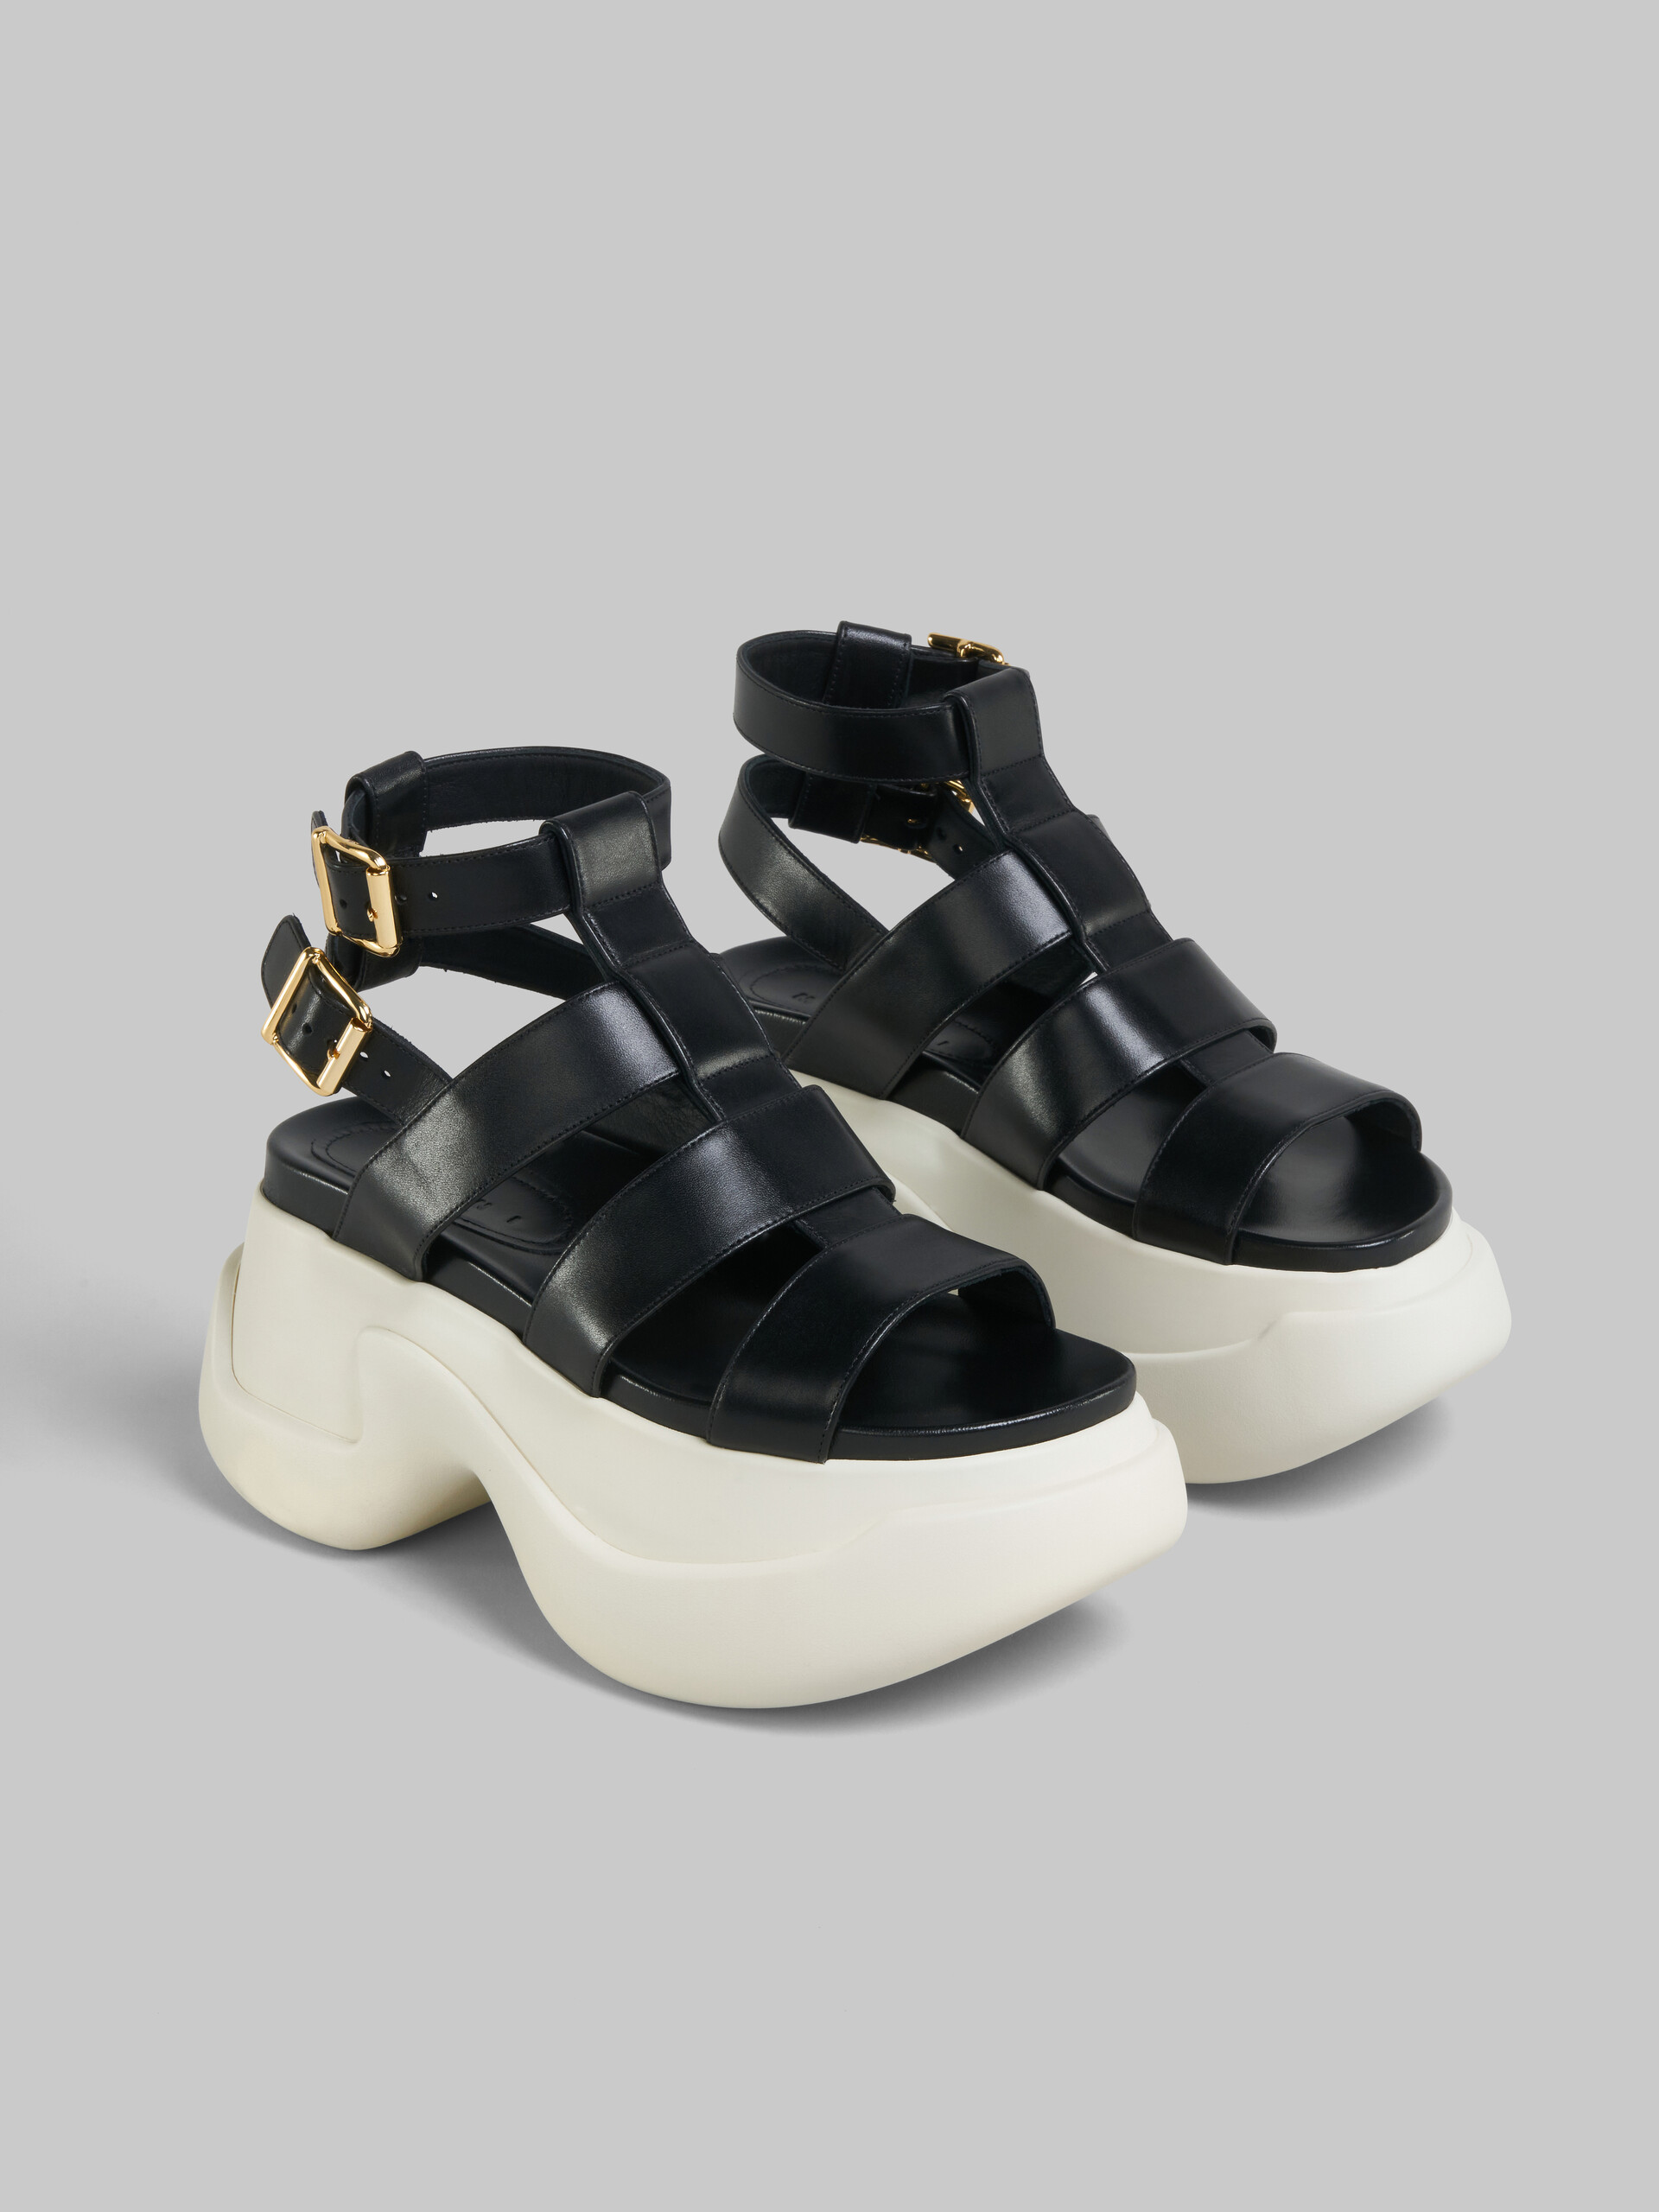 Black leather gladiator sandal with platform sole - Sandals - Image 5